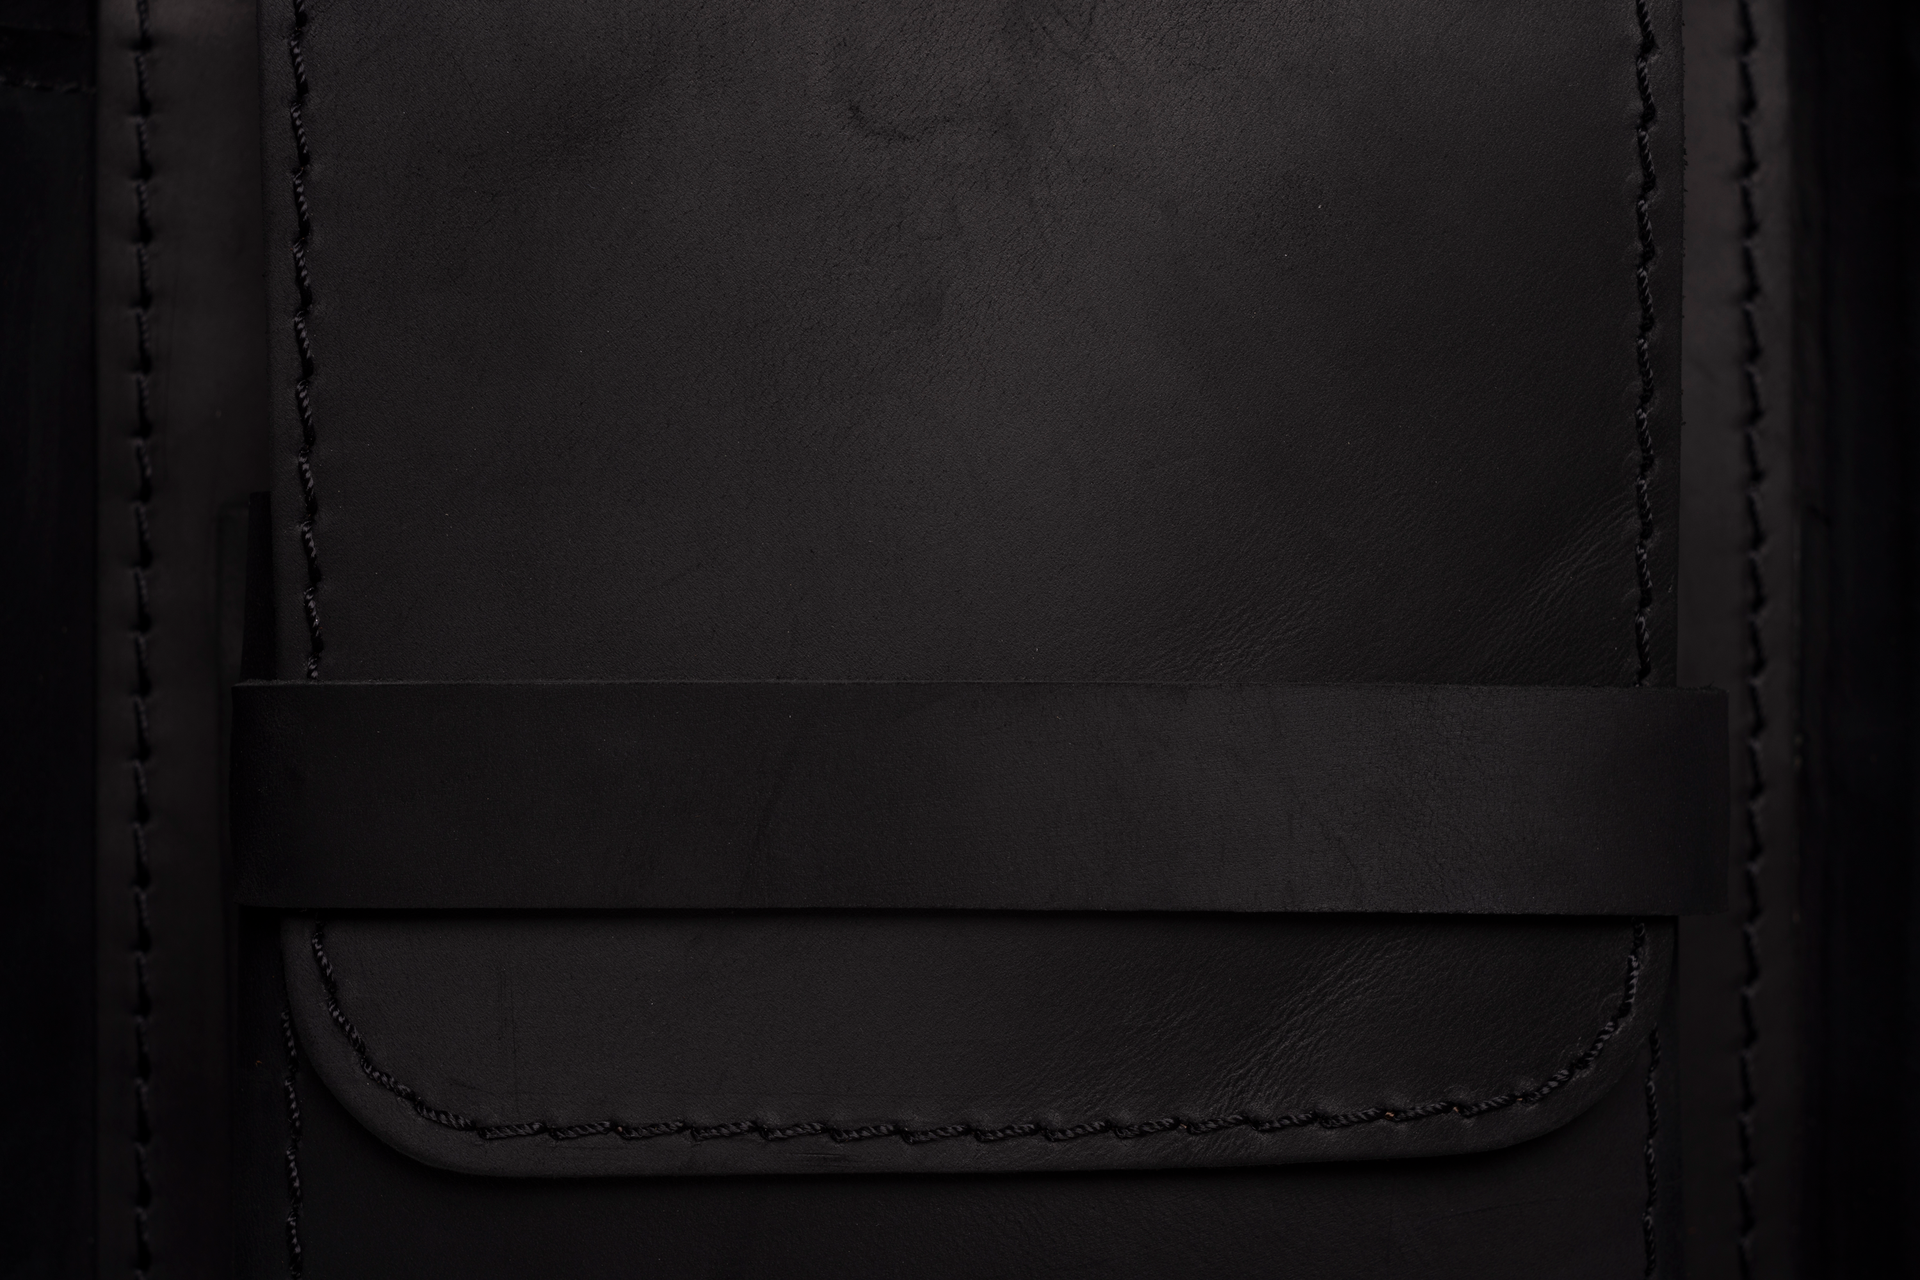 Signature Leather Case in Black